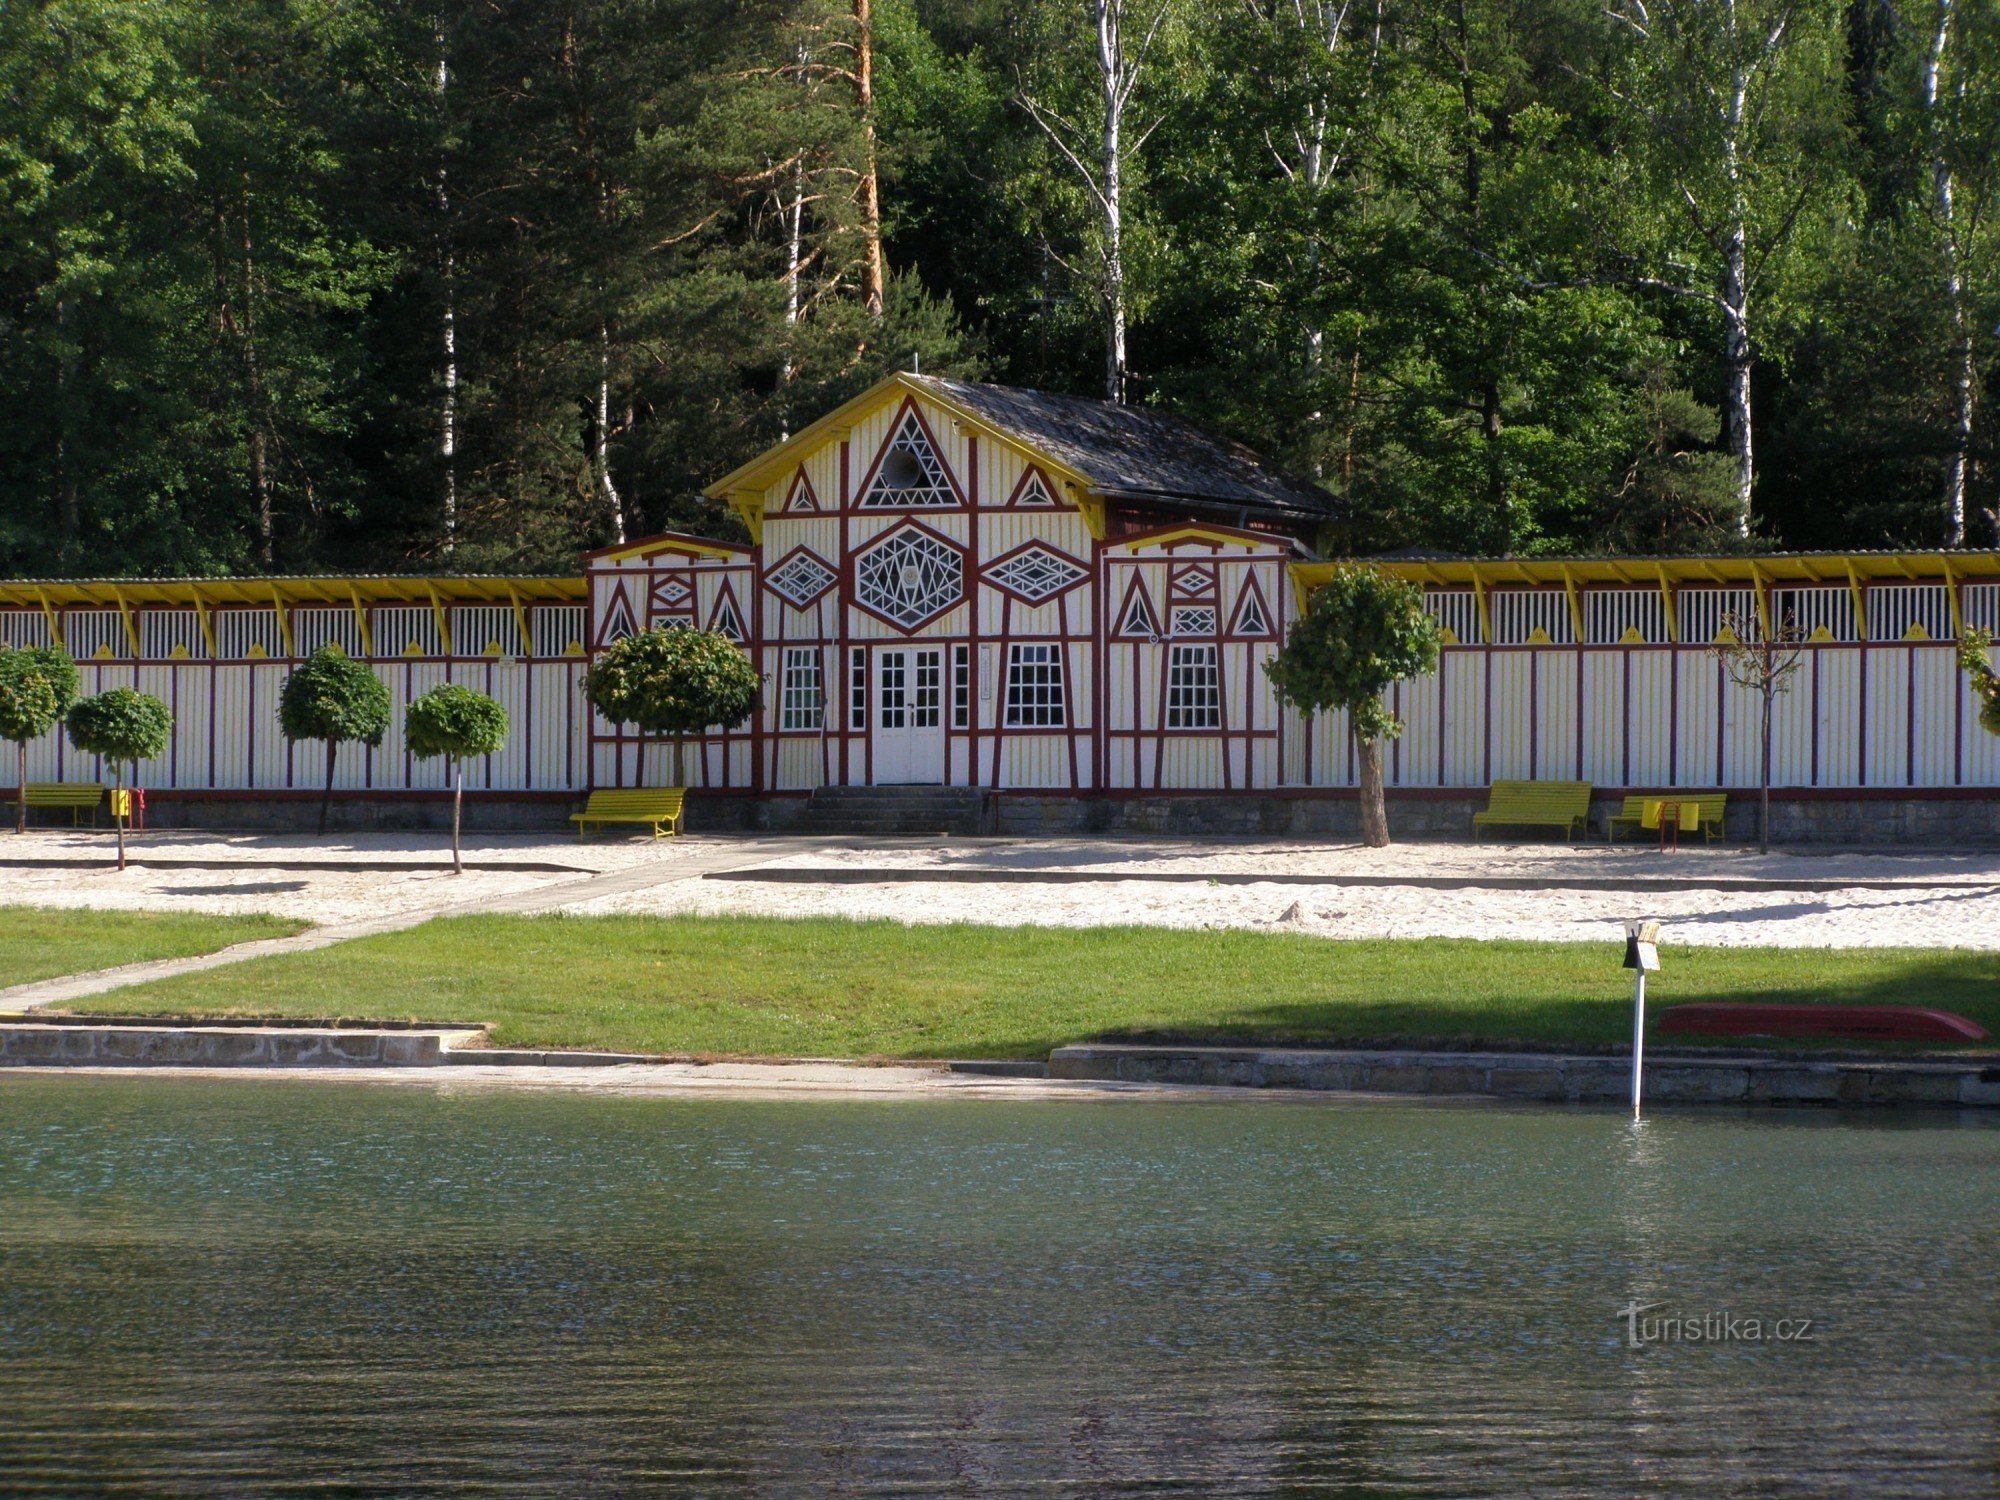 Hořice - piscina Dachova